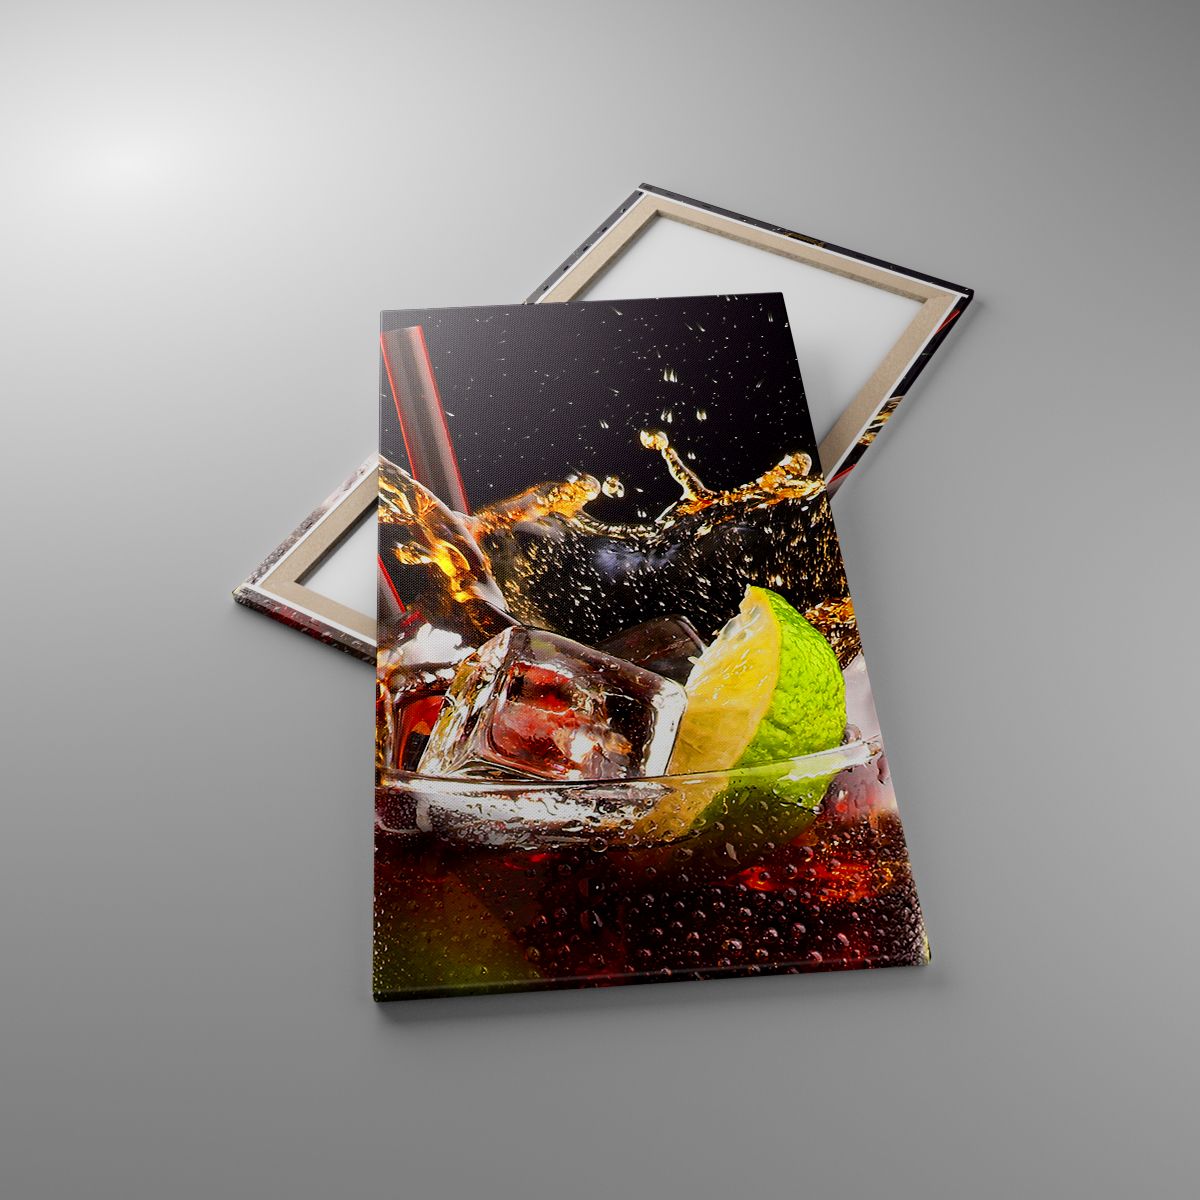 Leinwandbild Gastronomie, Leinwandbild Cocktail, Leinwandbild Obst, Leinwandbild Getränk, Leinwandbild Küche